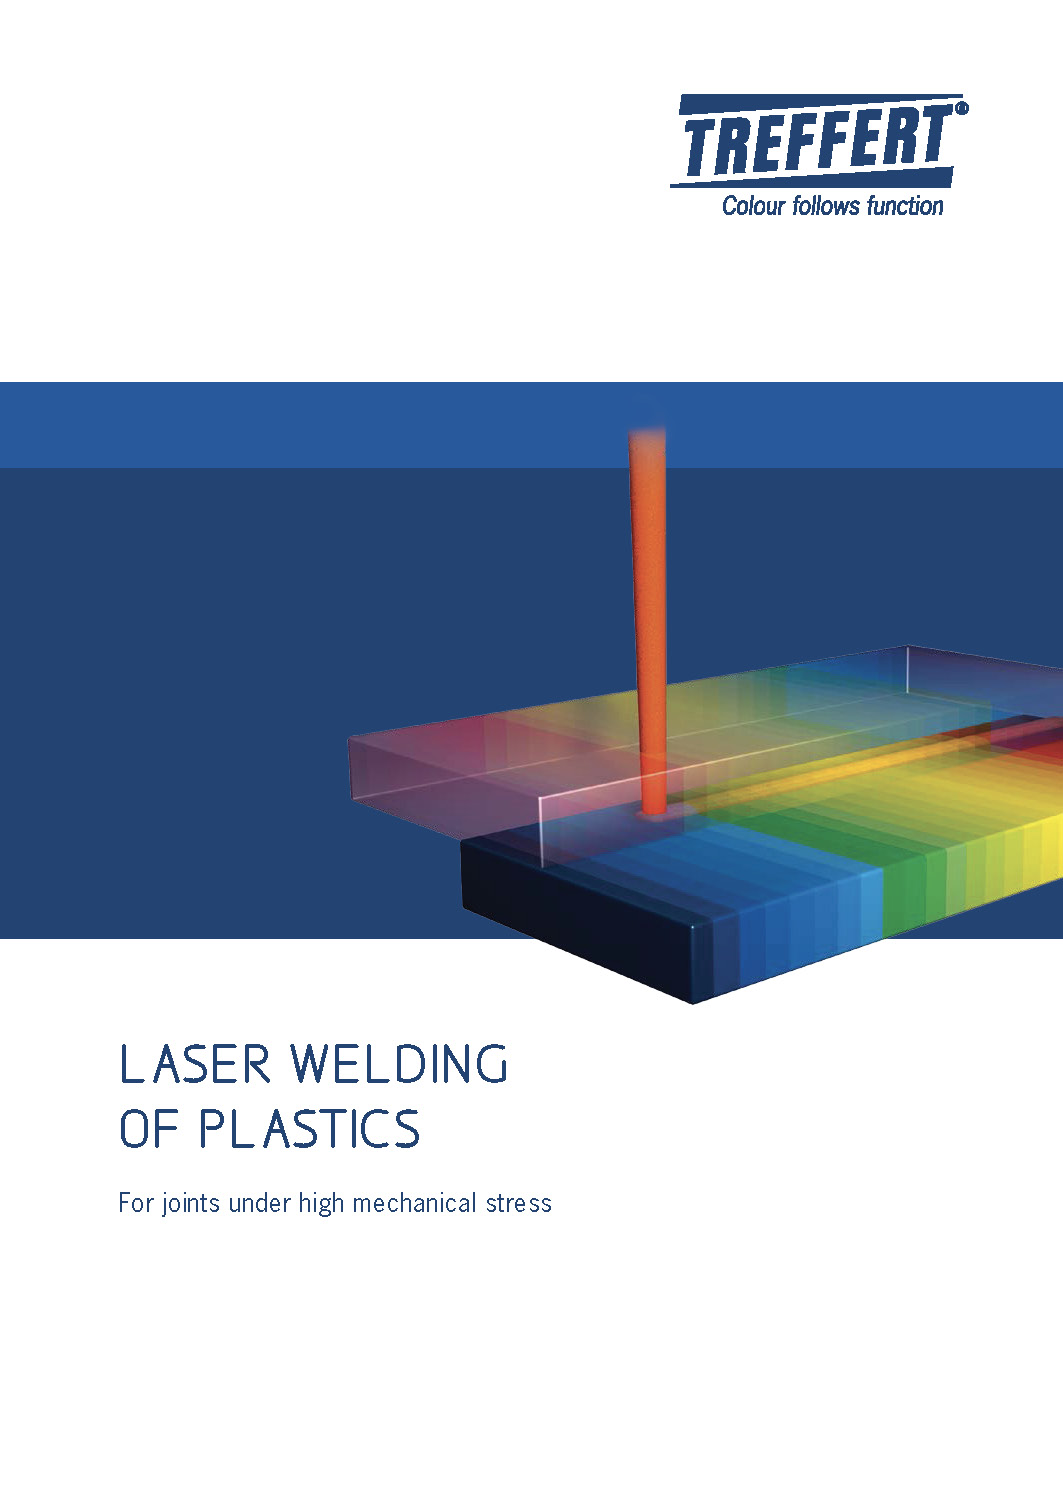 Treffert brochure about laser welding of plastics - For joints under high mechanical stress